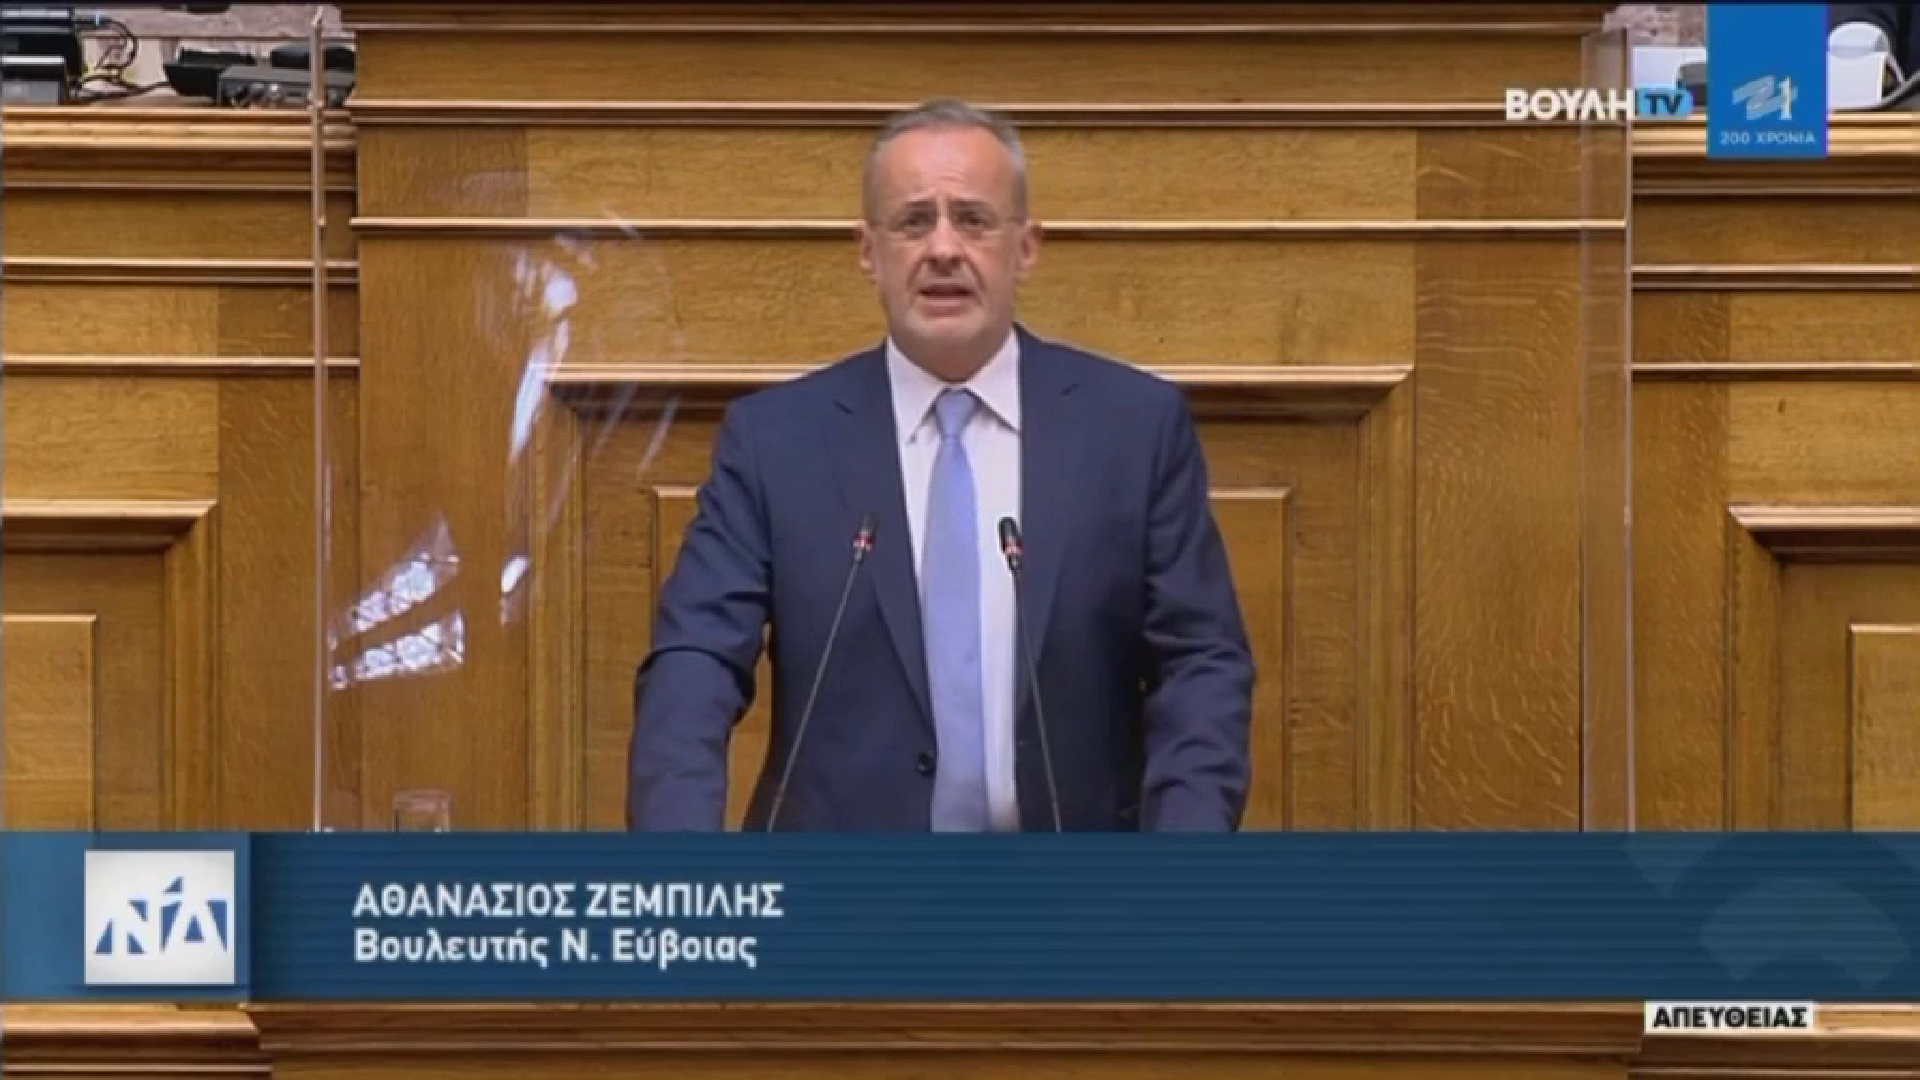 Θ. Ζεμπίλης στη Βουλή: Η Ελλάδα μεγαλούργησε όταν βασίστηκε στην ακτινοβολία του Οικουμενικού Ελληνισμού (video)